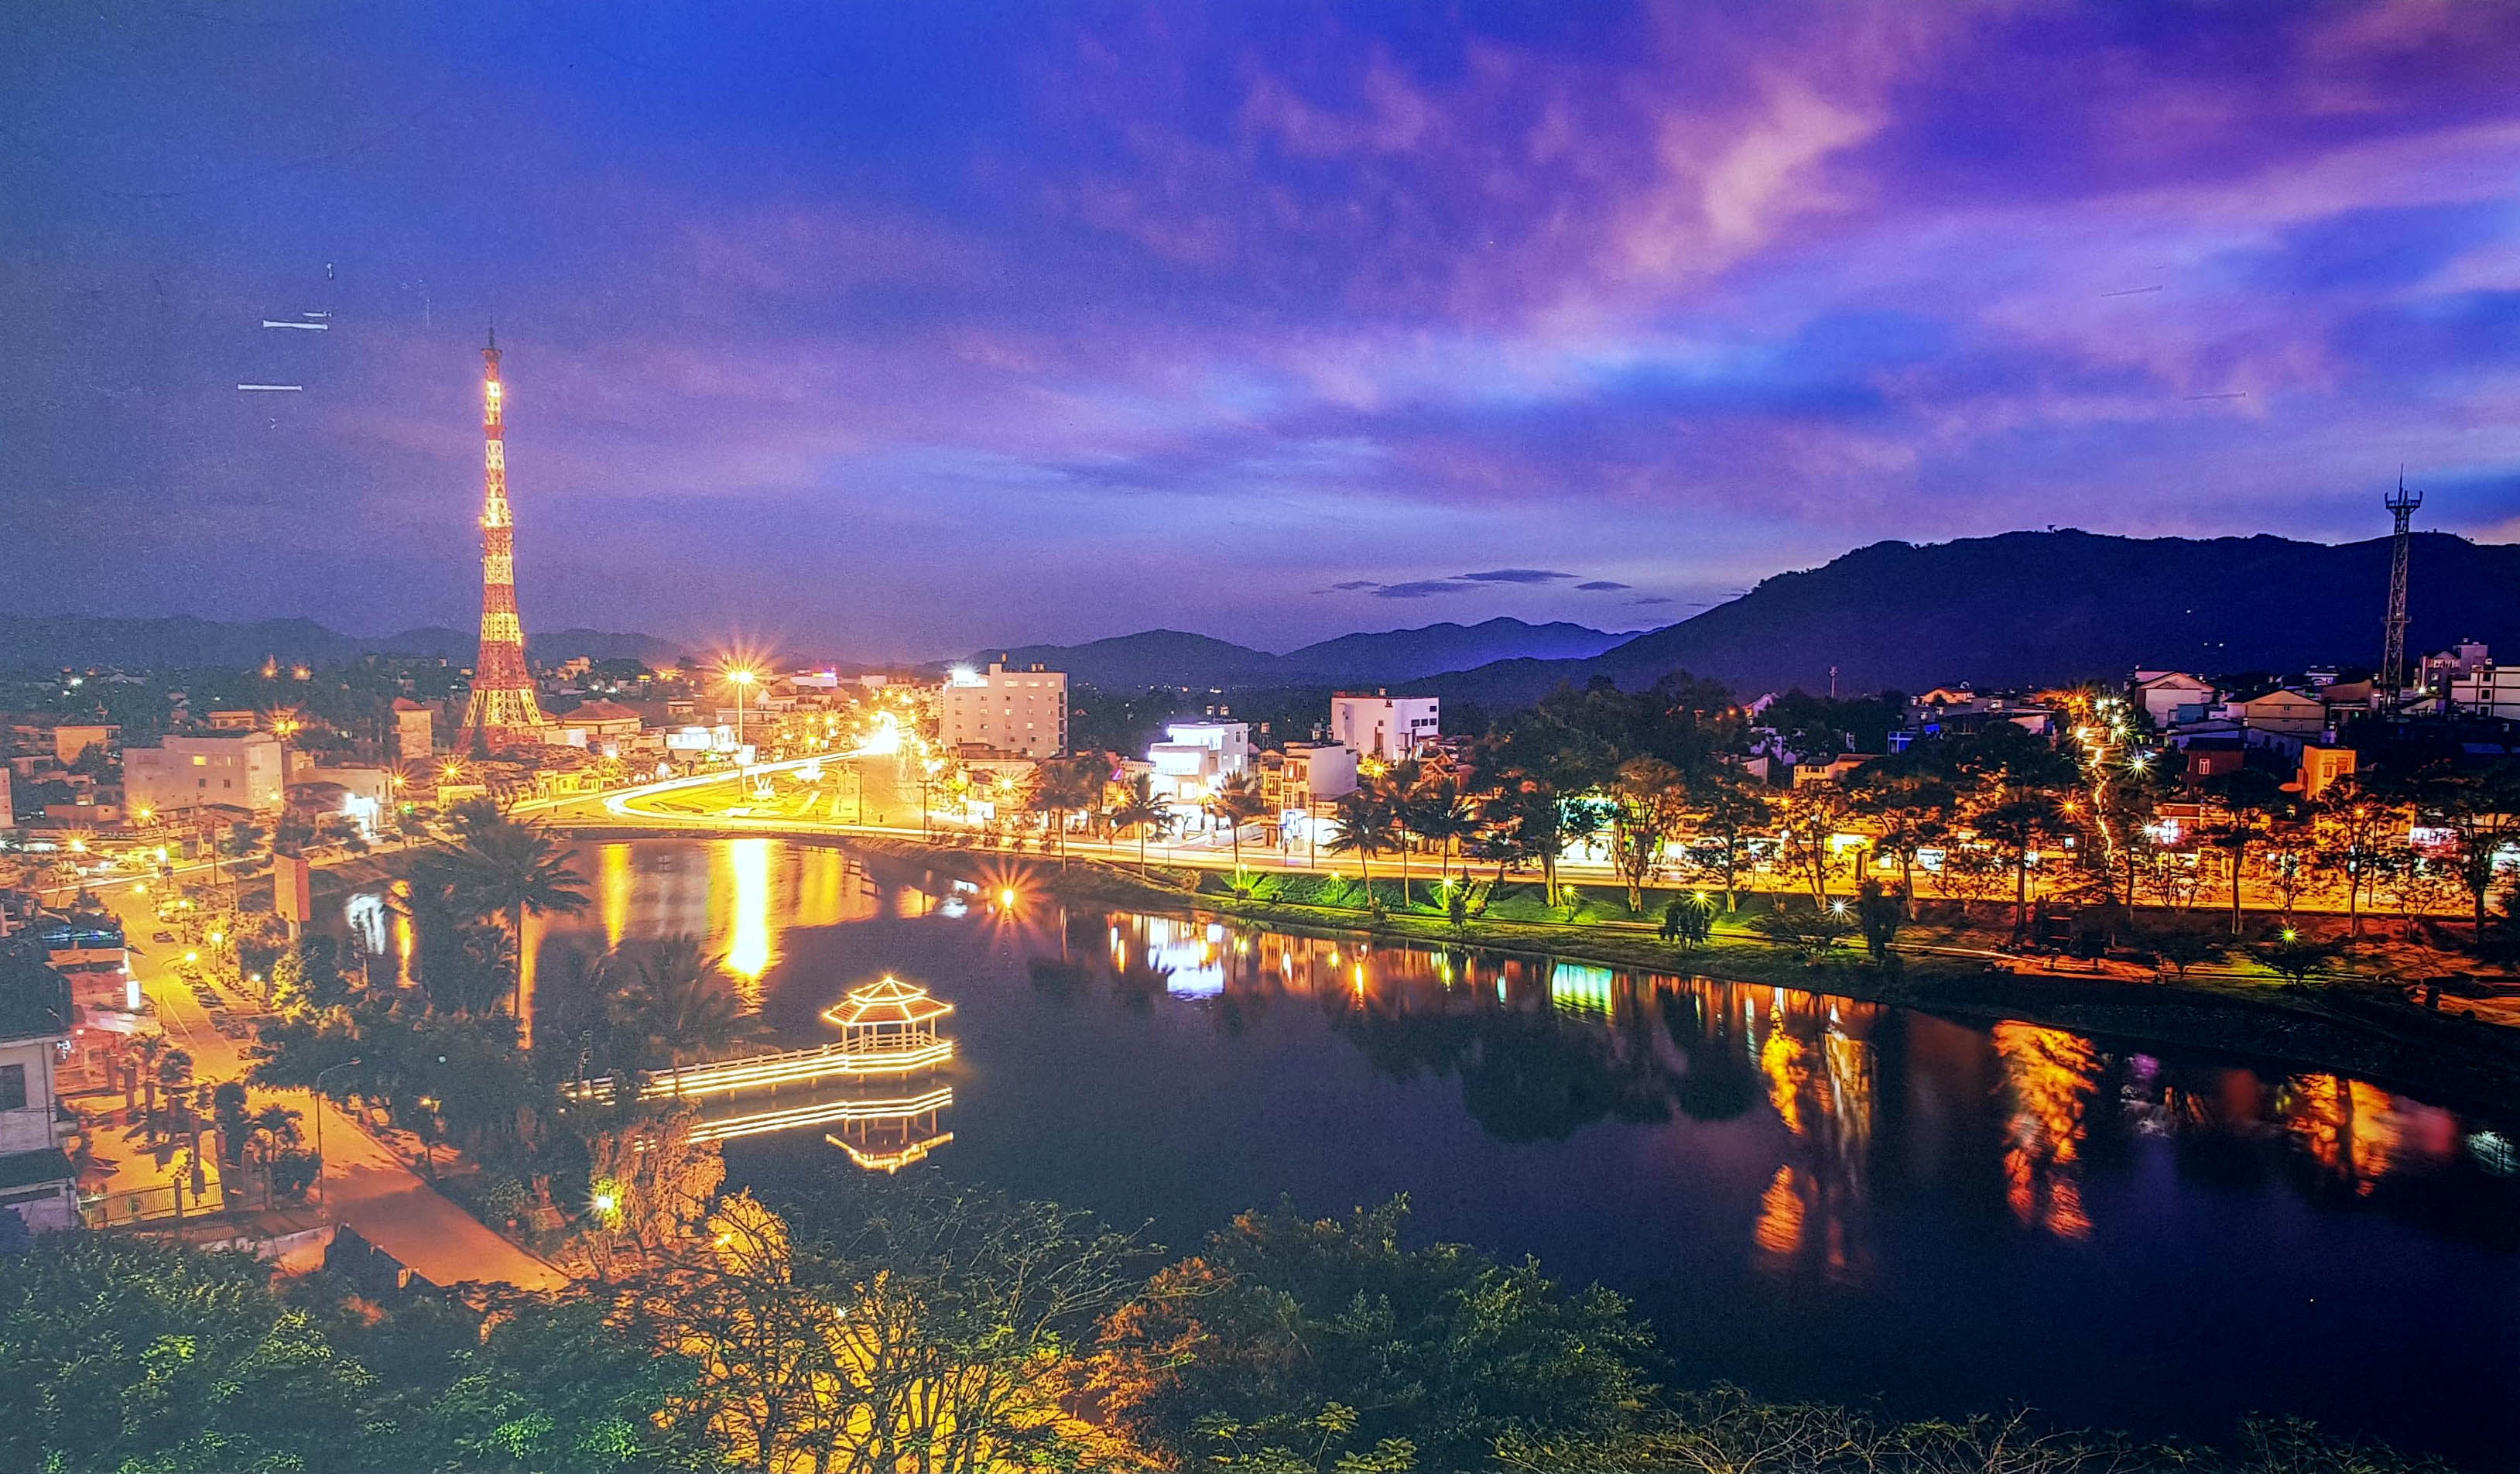 Bảo Lộc, đô thị miền sơn cước, là một trong những địa điểm du lịch hấp dẫn nhất tại miền Trung. Với những khung cảnh thiên nhiên tươi đẹp cùng con người hiền hòa, bạn sẽ được trải nghiệm một phần không thể tuyệt vời hơn của đất nước Việt Nam. Hãy xem hình ảnh mới nhất từ Bảo Lộc để có thể cảm nhận hết vẻ đẹp của nó.